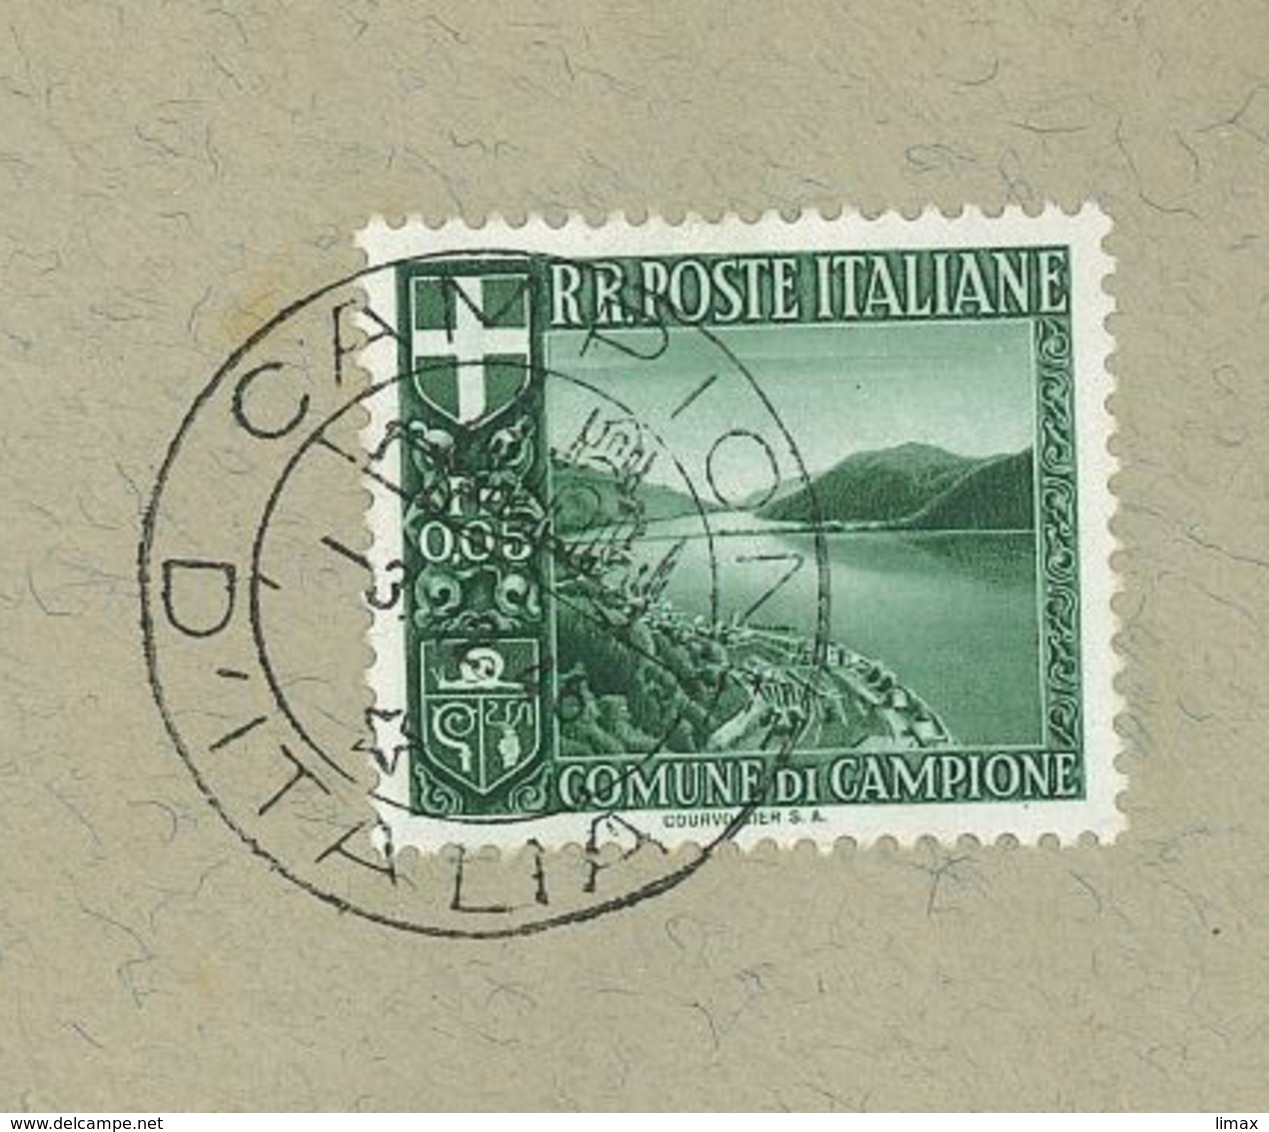 Campione D'Italia 1946 Wappen Schnecke Tessin Exklave Lugano Mussolini (1933) - 1946-47 Corpo Polacco Period